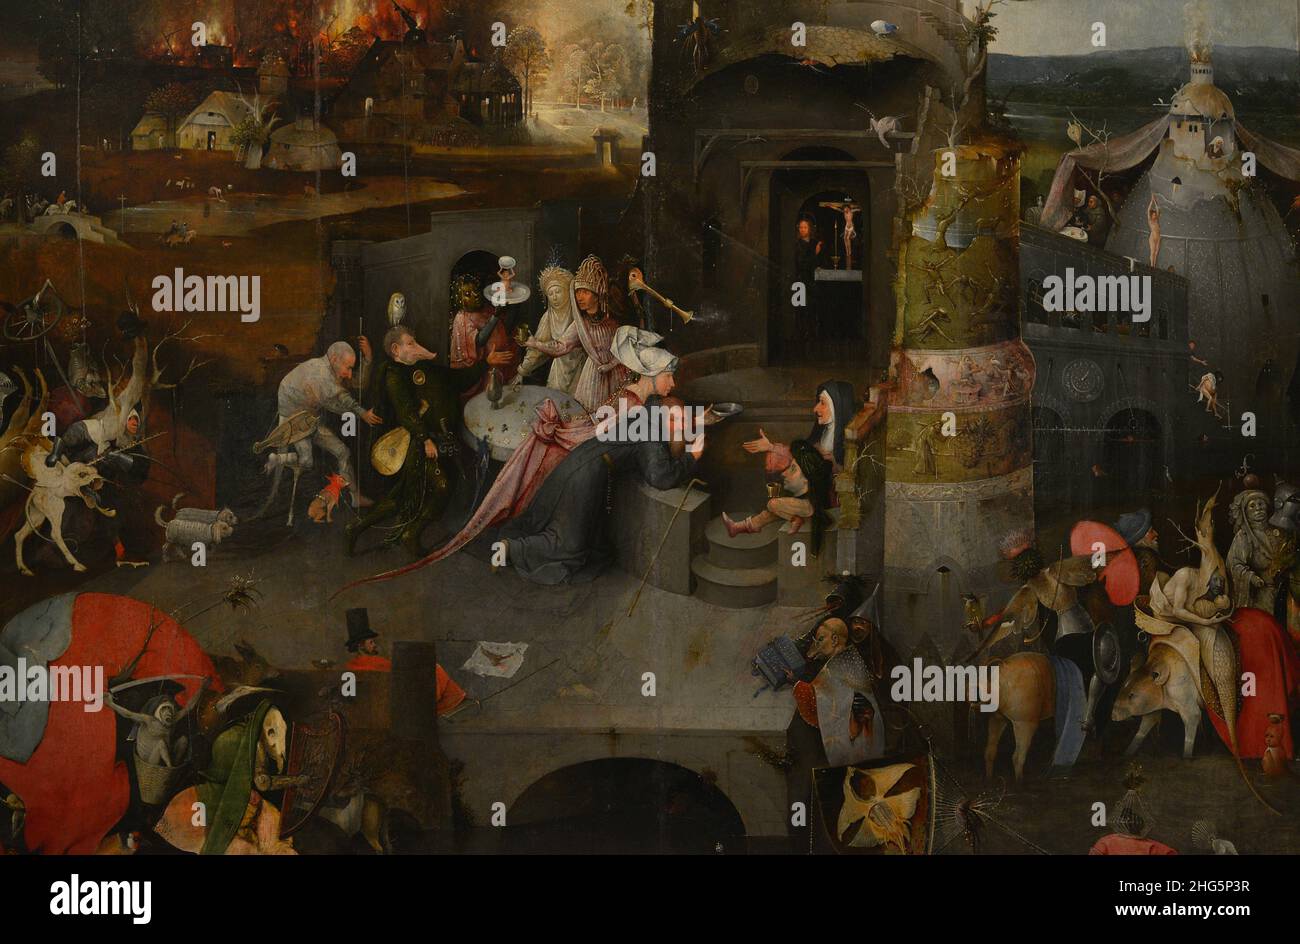 Hieronymus Bosch (1450-1516). Niederländischer Maler. Triptychon der Versuchungen des heiligen Antonius, 1498. Detail der zentralen Tafel, die die Versuchung des heiligen Athony darstellt. Nationalmuseum für Alte Kunst Lissabon, Portugal. Stockfoto